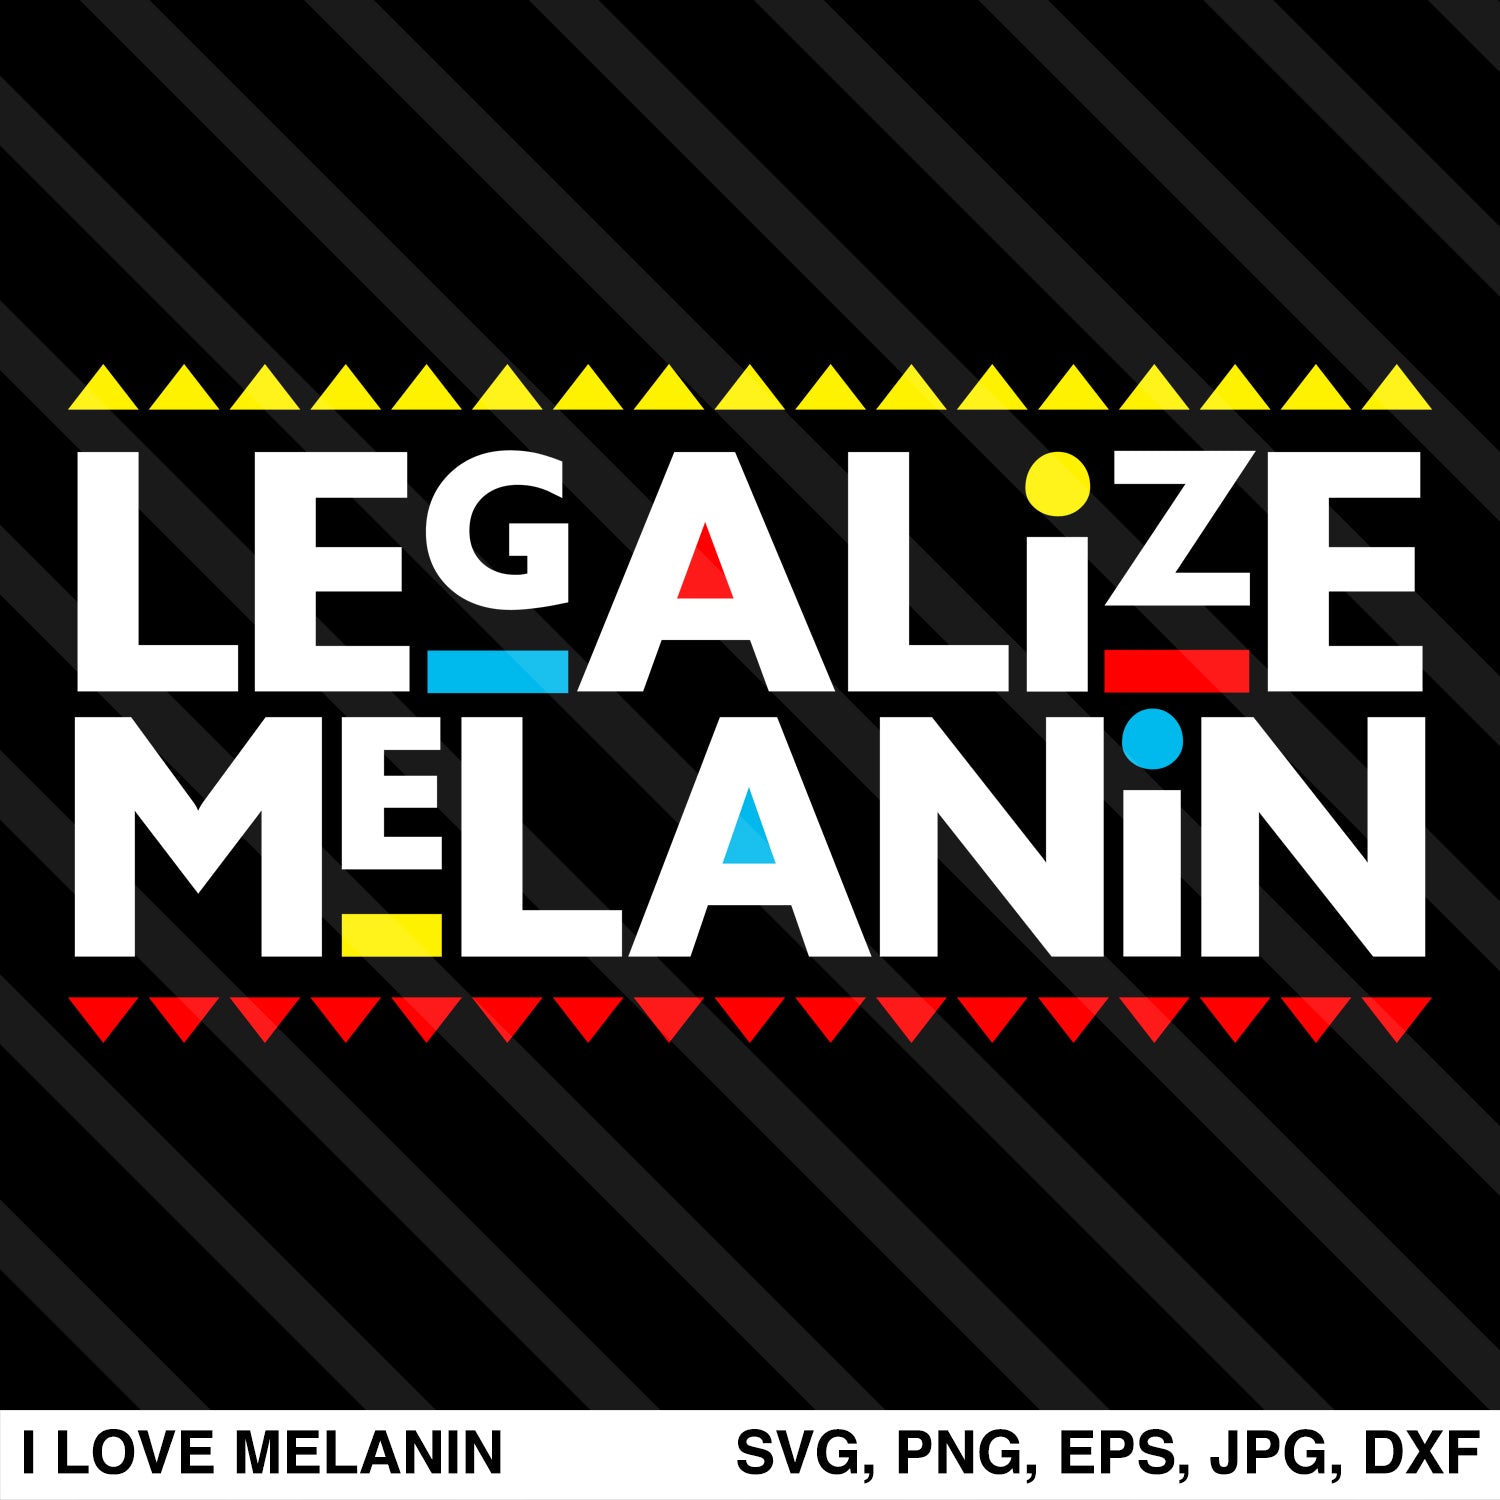 Download Legalize Melanin SVG - I Love Melanin